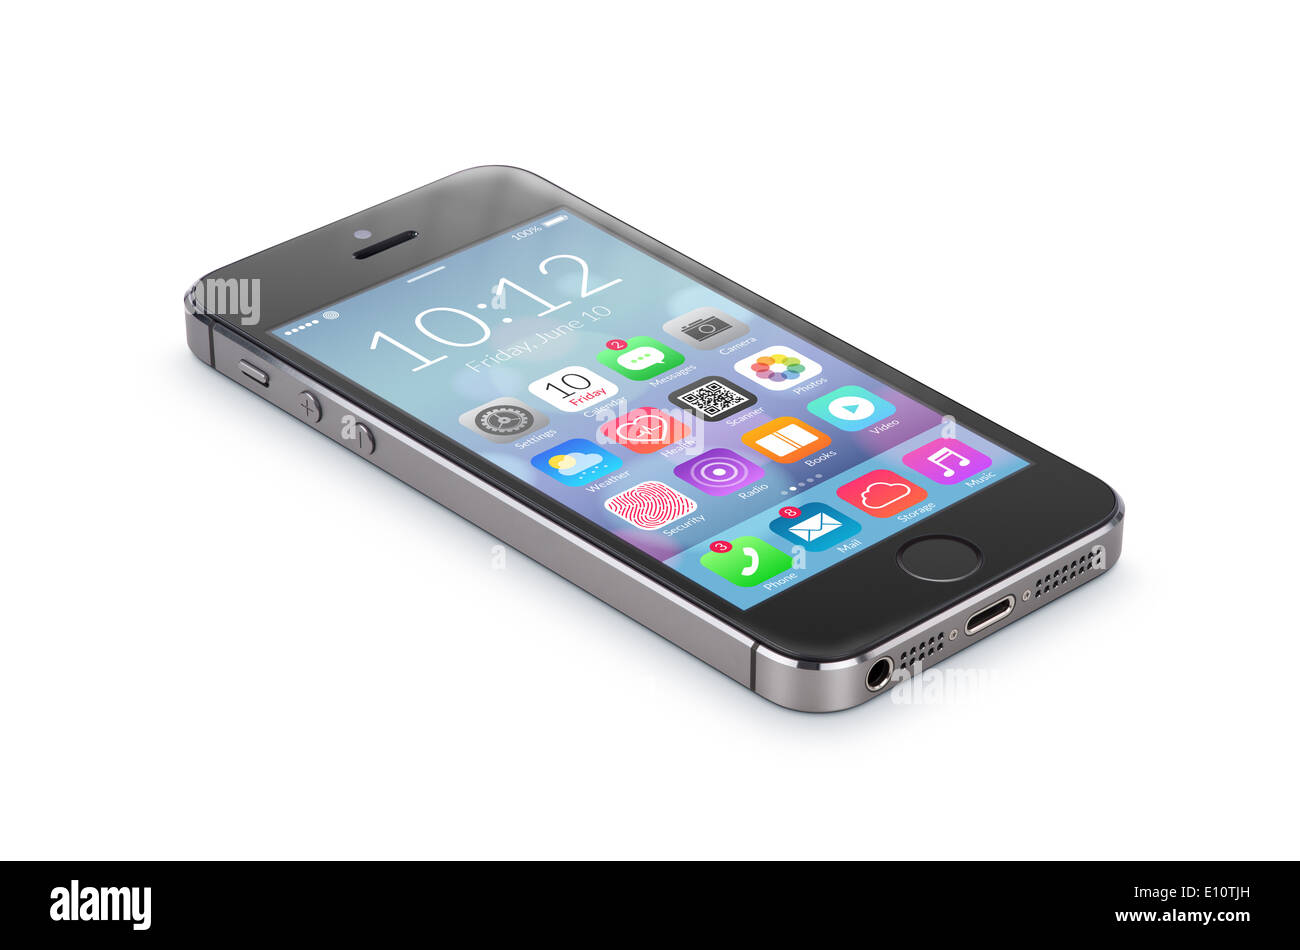 Nero smartphone moderno con design piatto le icone delle applicazioni sulla schermata giace sulla superficie, isolato su sfondo bianco. Foto Stock